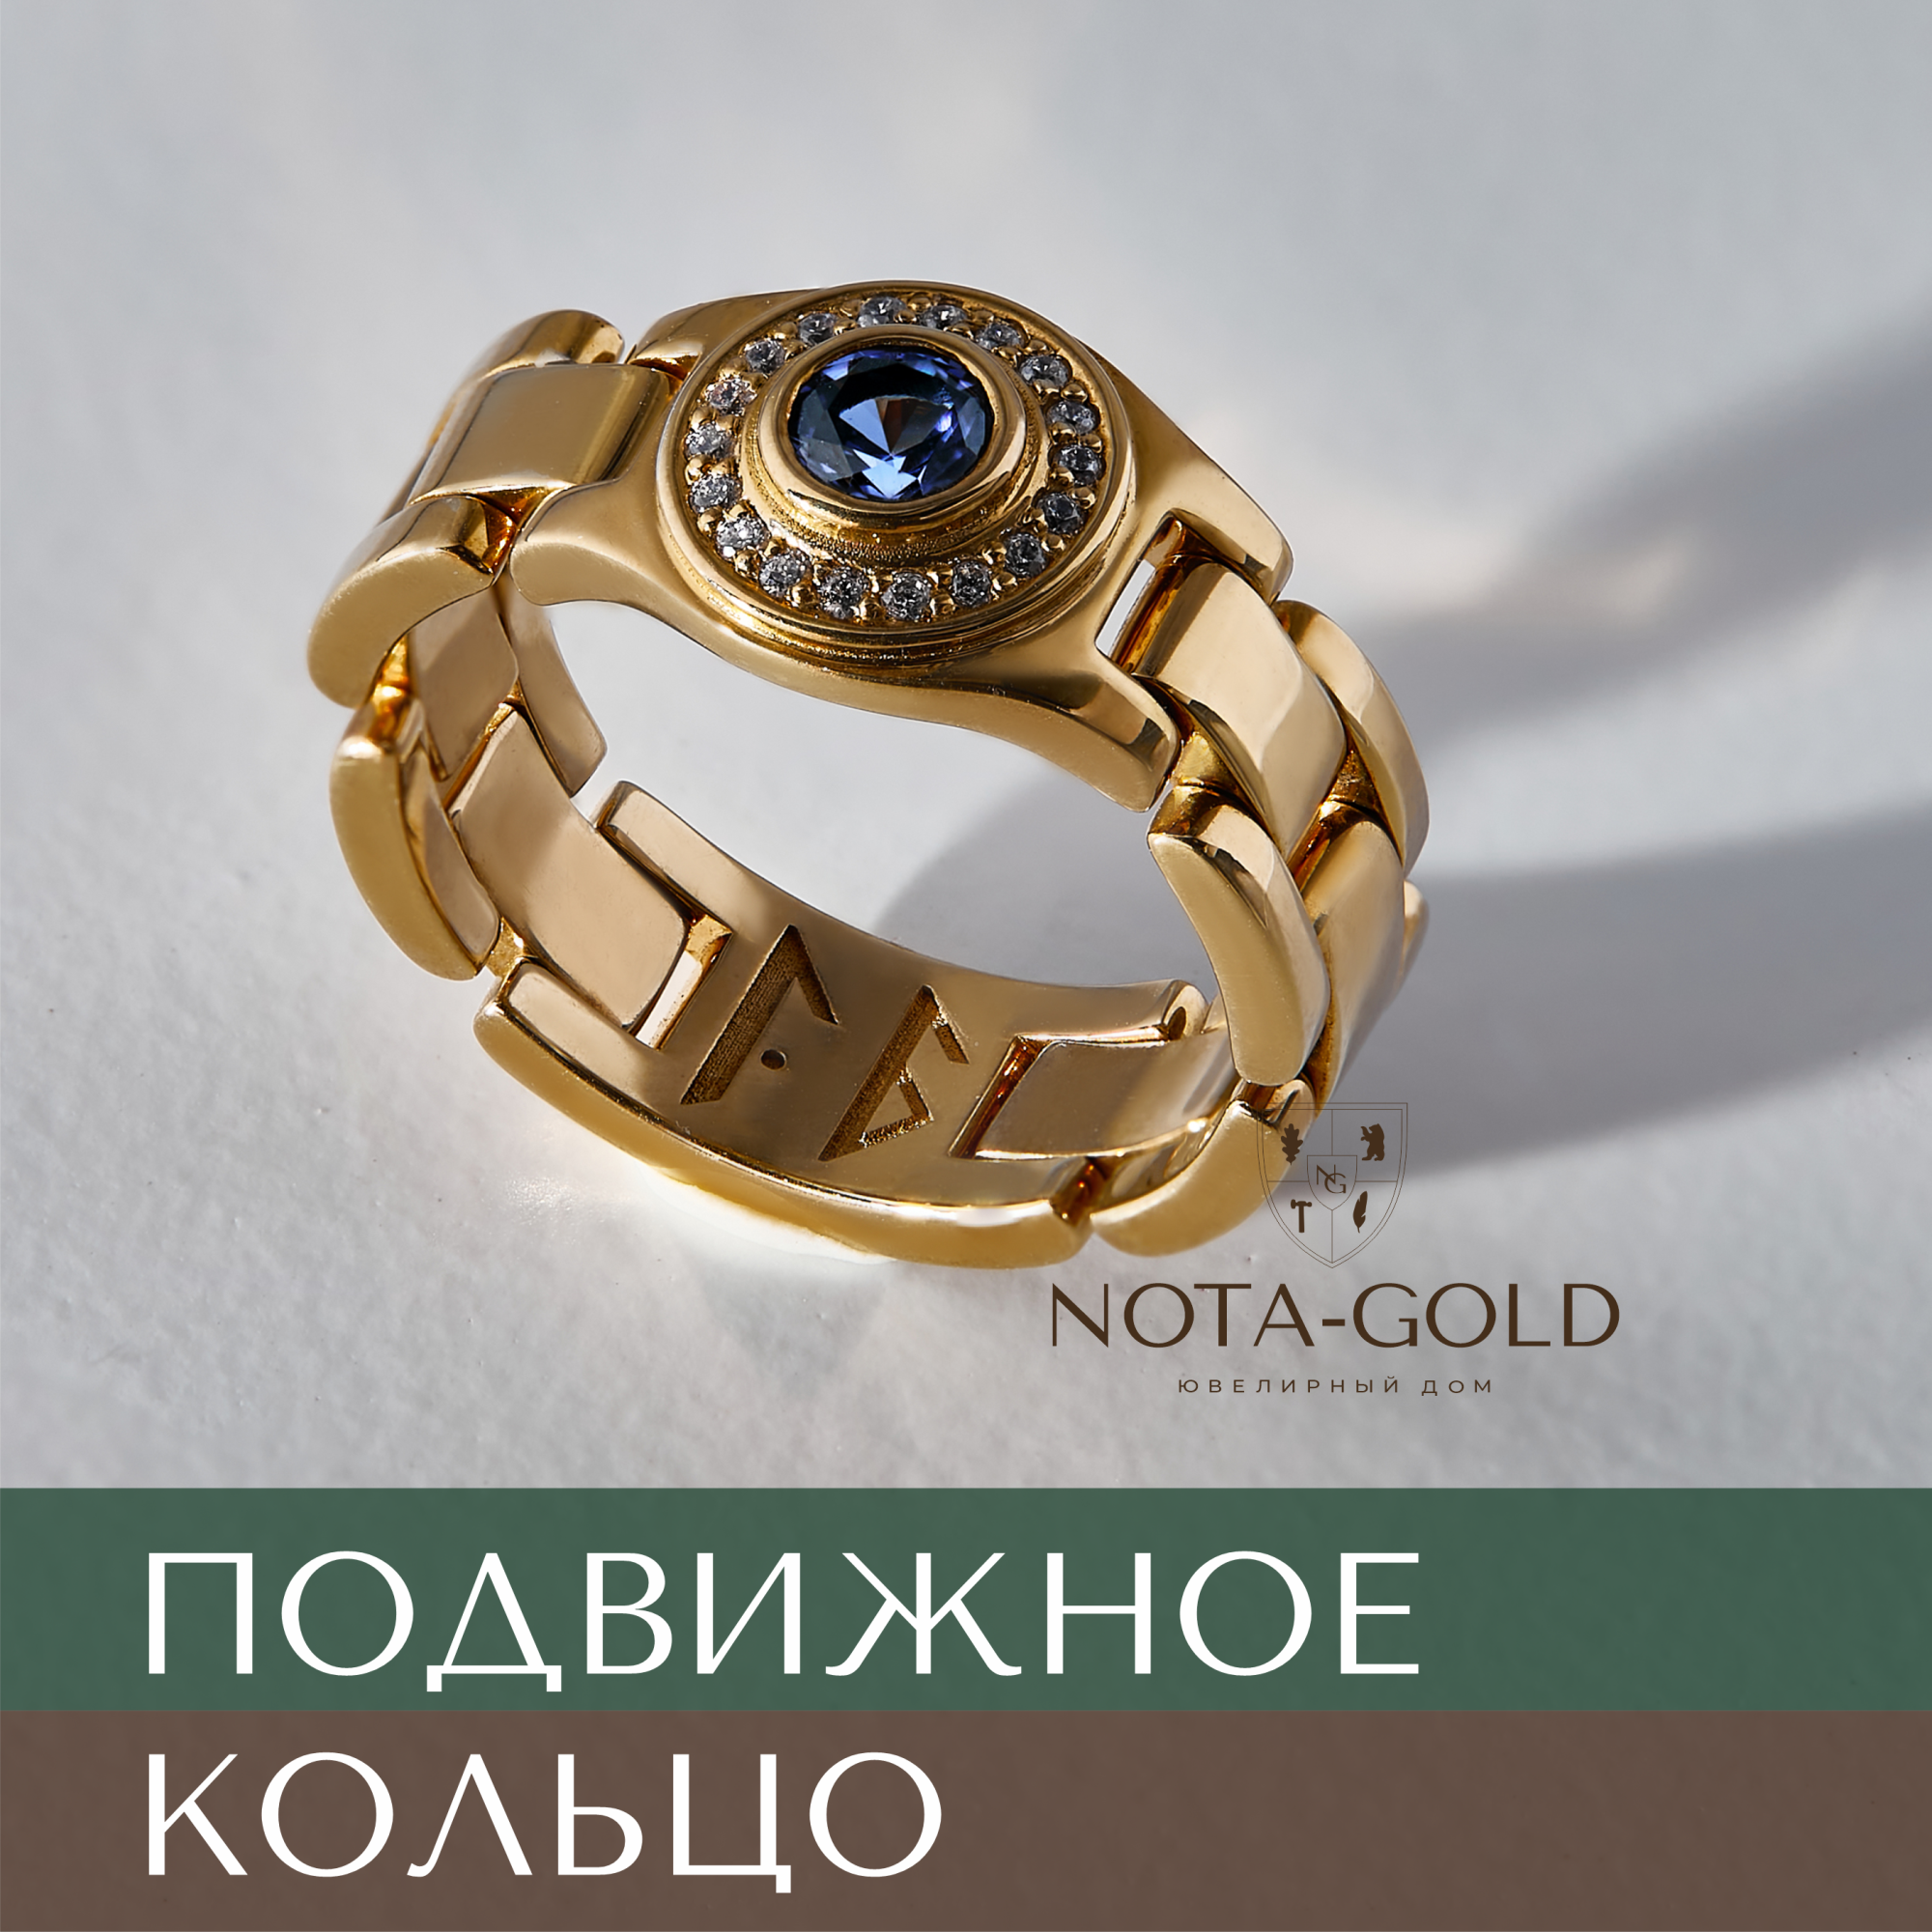 Подвижное мужское кольцо - печатка браслетного типа из золота с сапфиром и бриллиантами